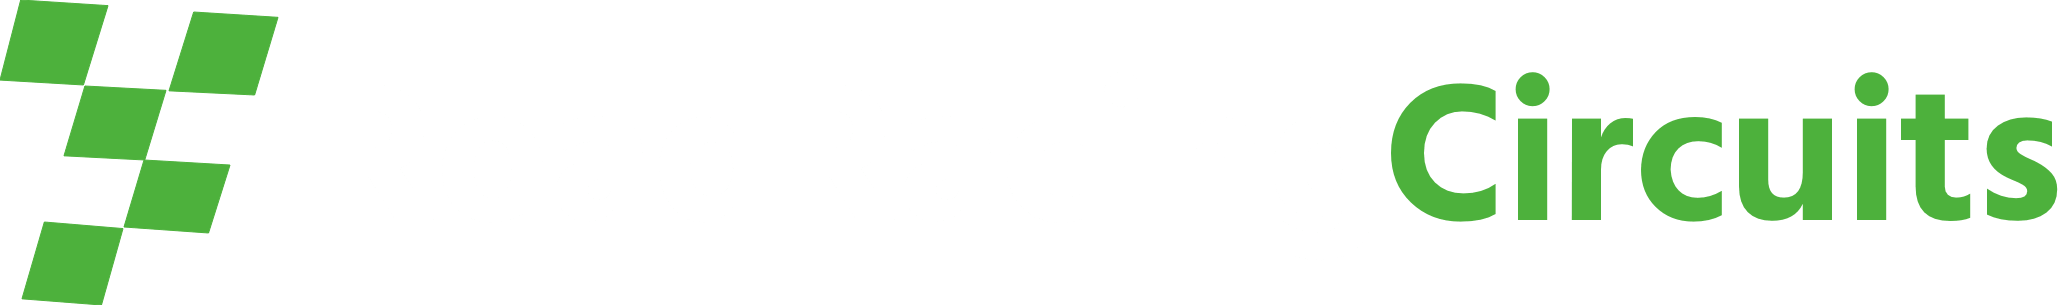 RoadRacingCircuits.com Logo